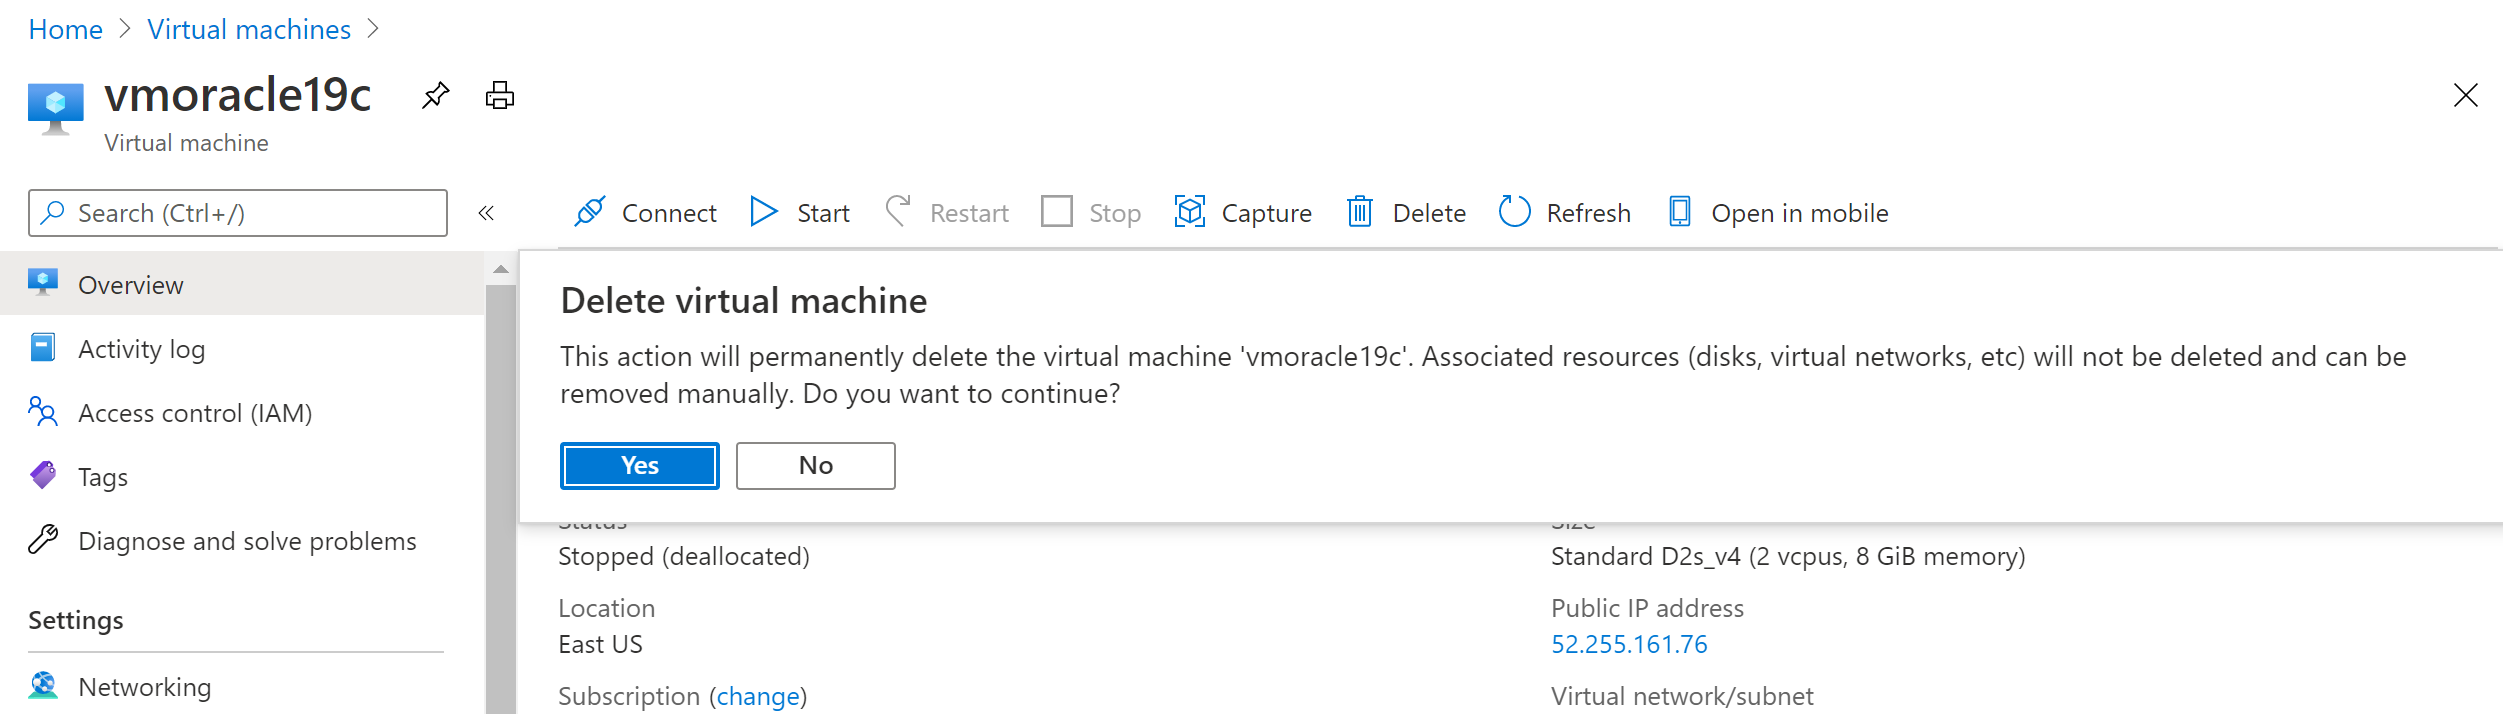 Captura de pantalla que muestra el mensaje de confirmación para eliminar una máquina virtual.